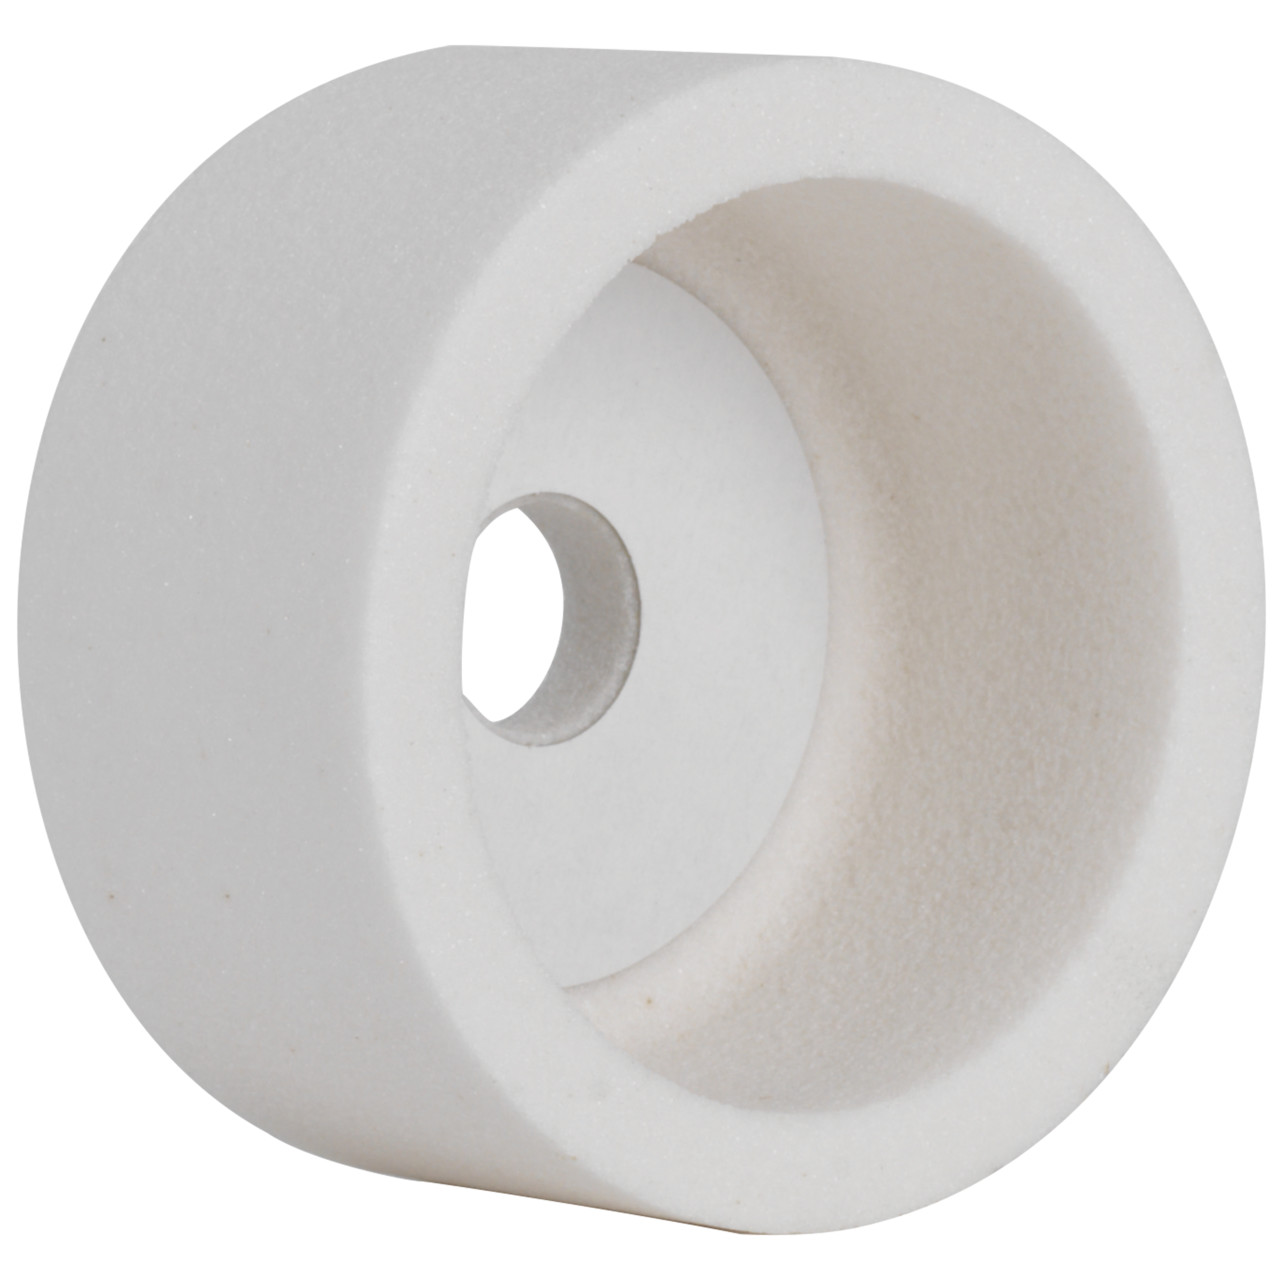 TYROLIT ceramica convenzionale per la rettifica a secco DxDxH 100x50x20 Per acciai non legati e basso legati, acciai alto legati e HSS, forma: 6, Art. 34924